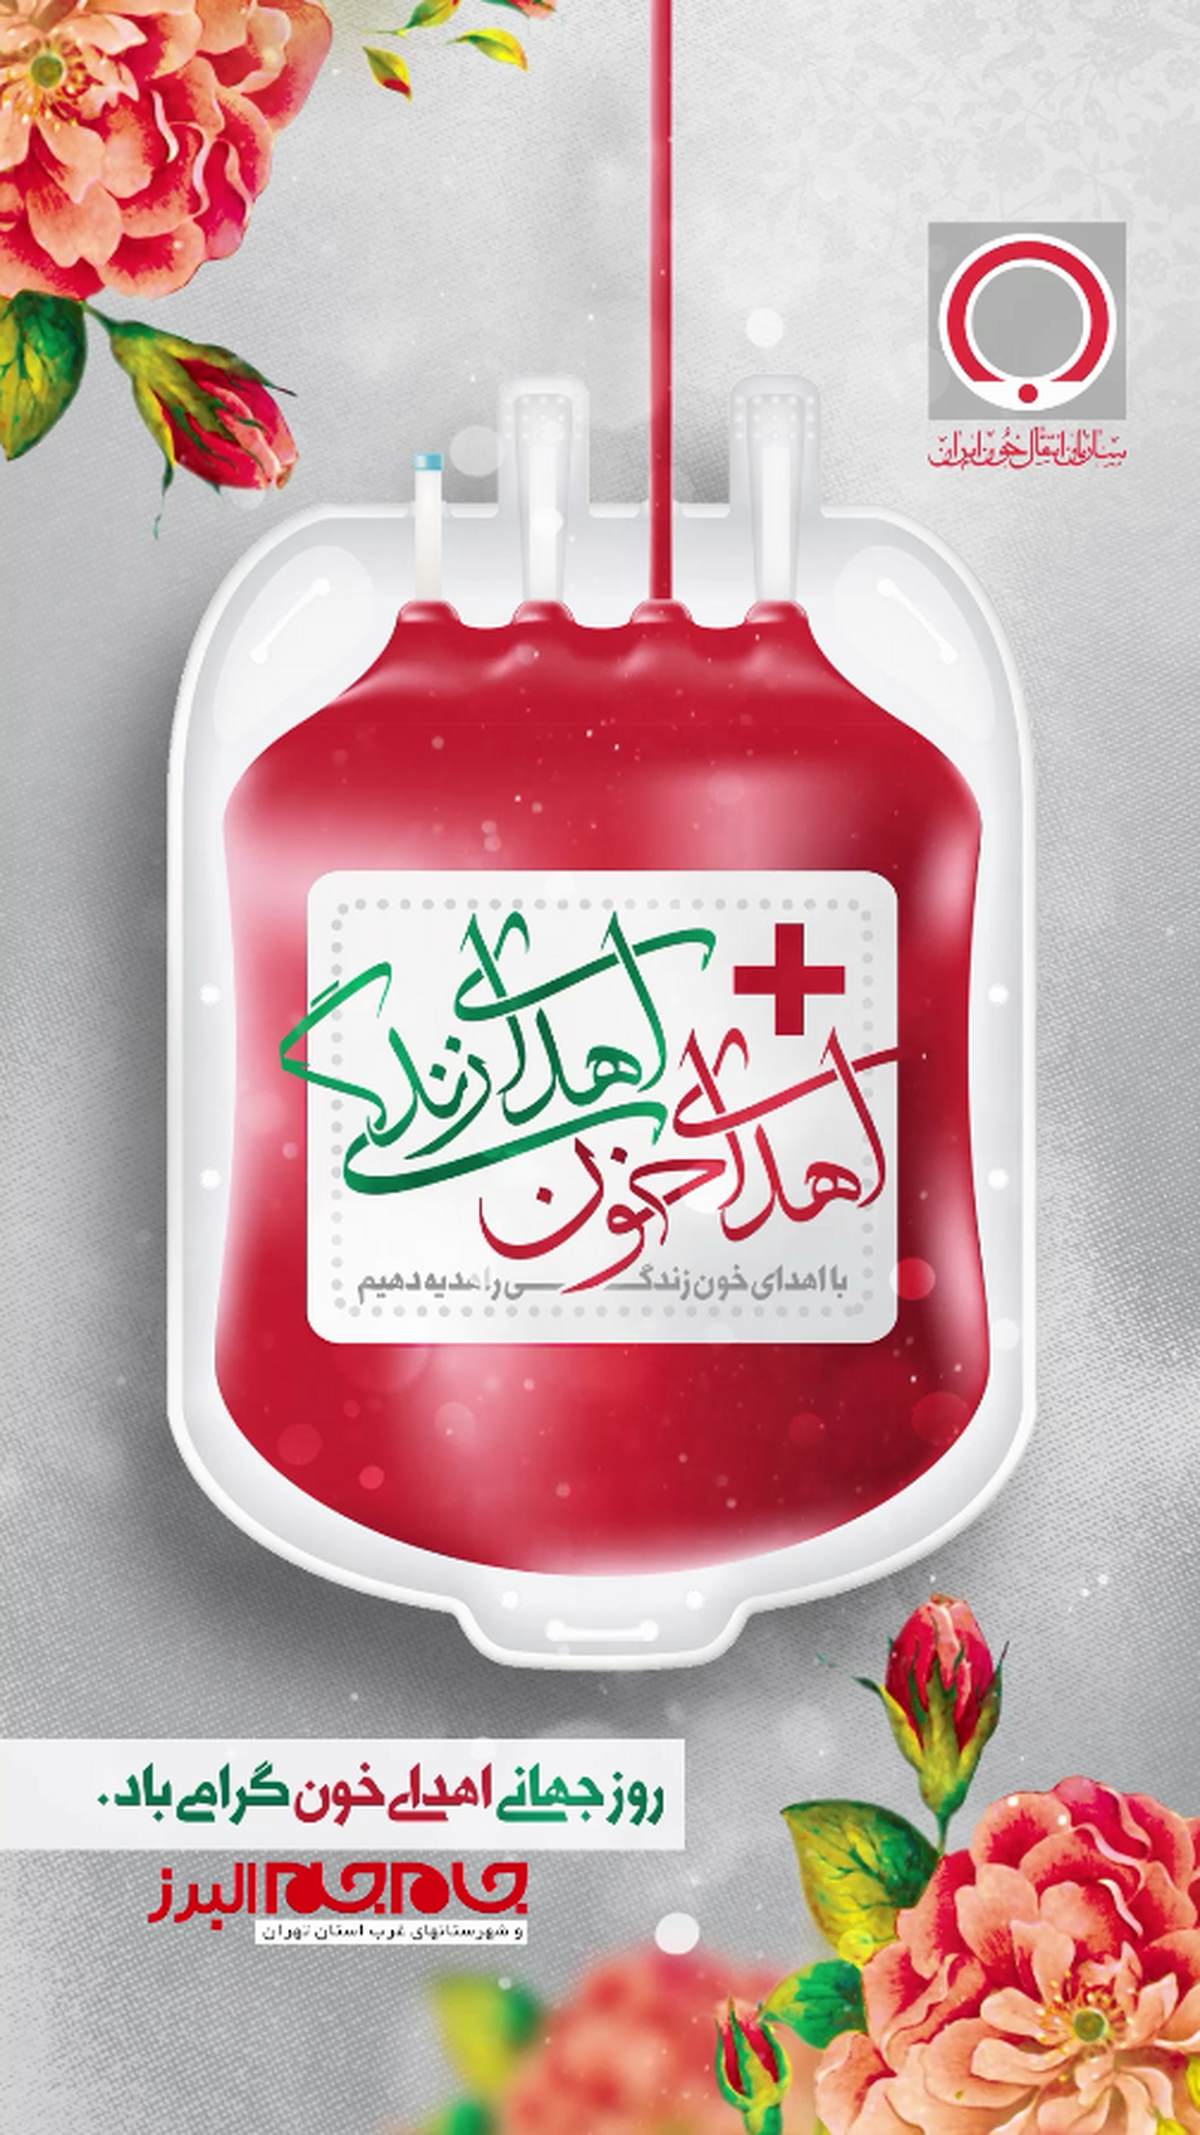 روز جهانی اهدای خون گرامی باد.